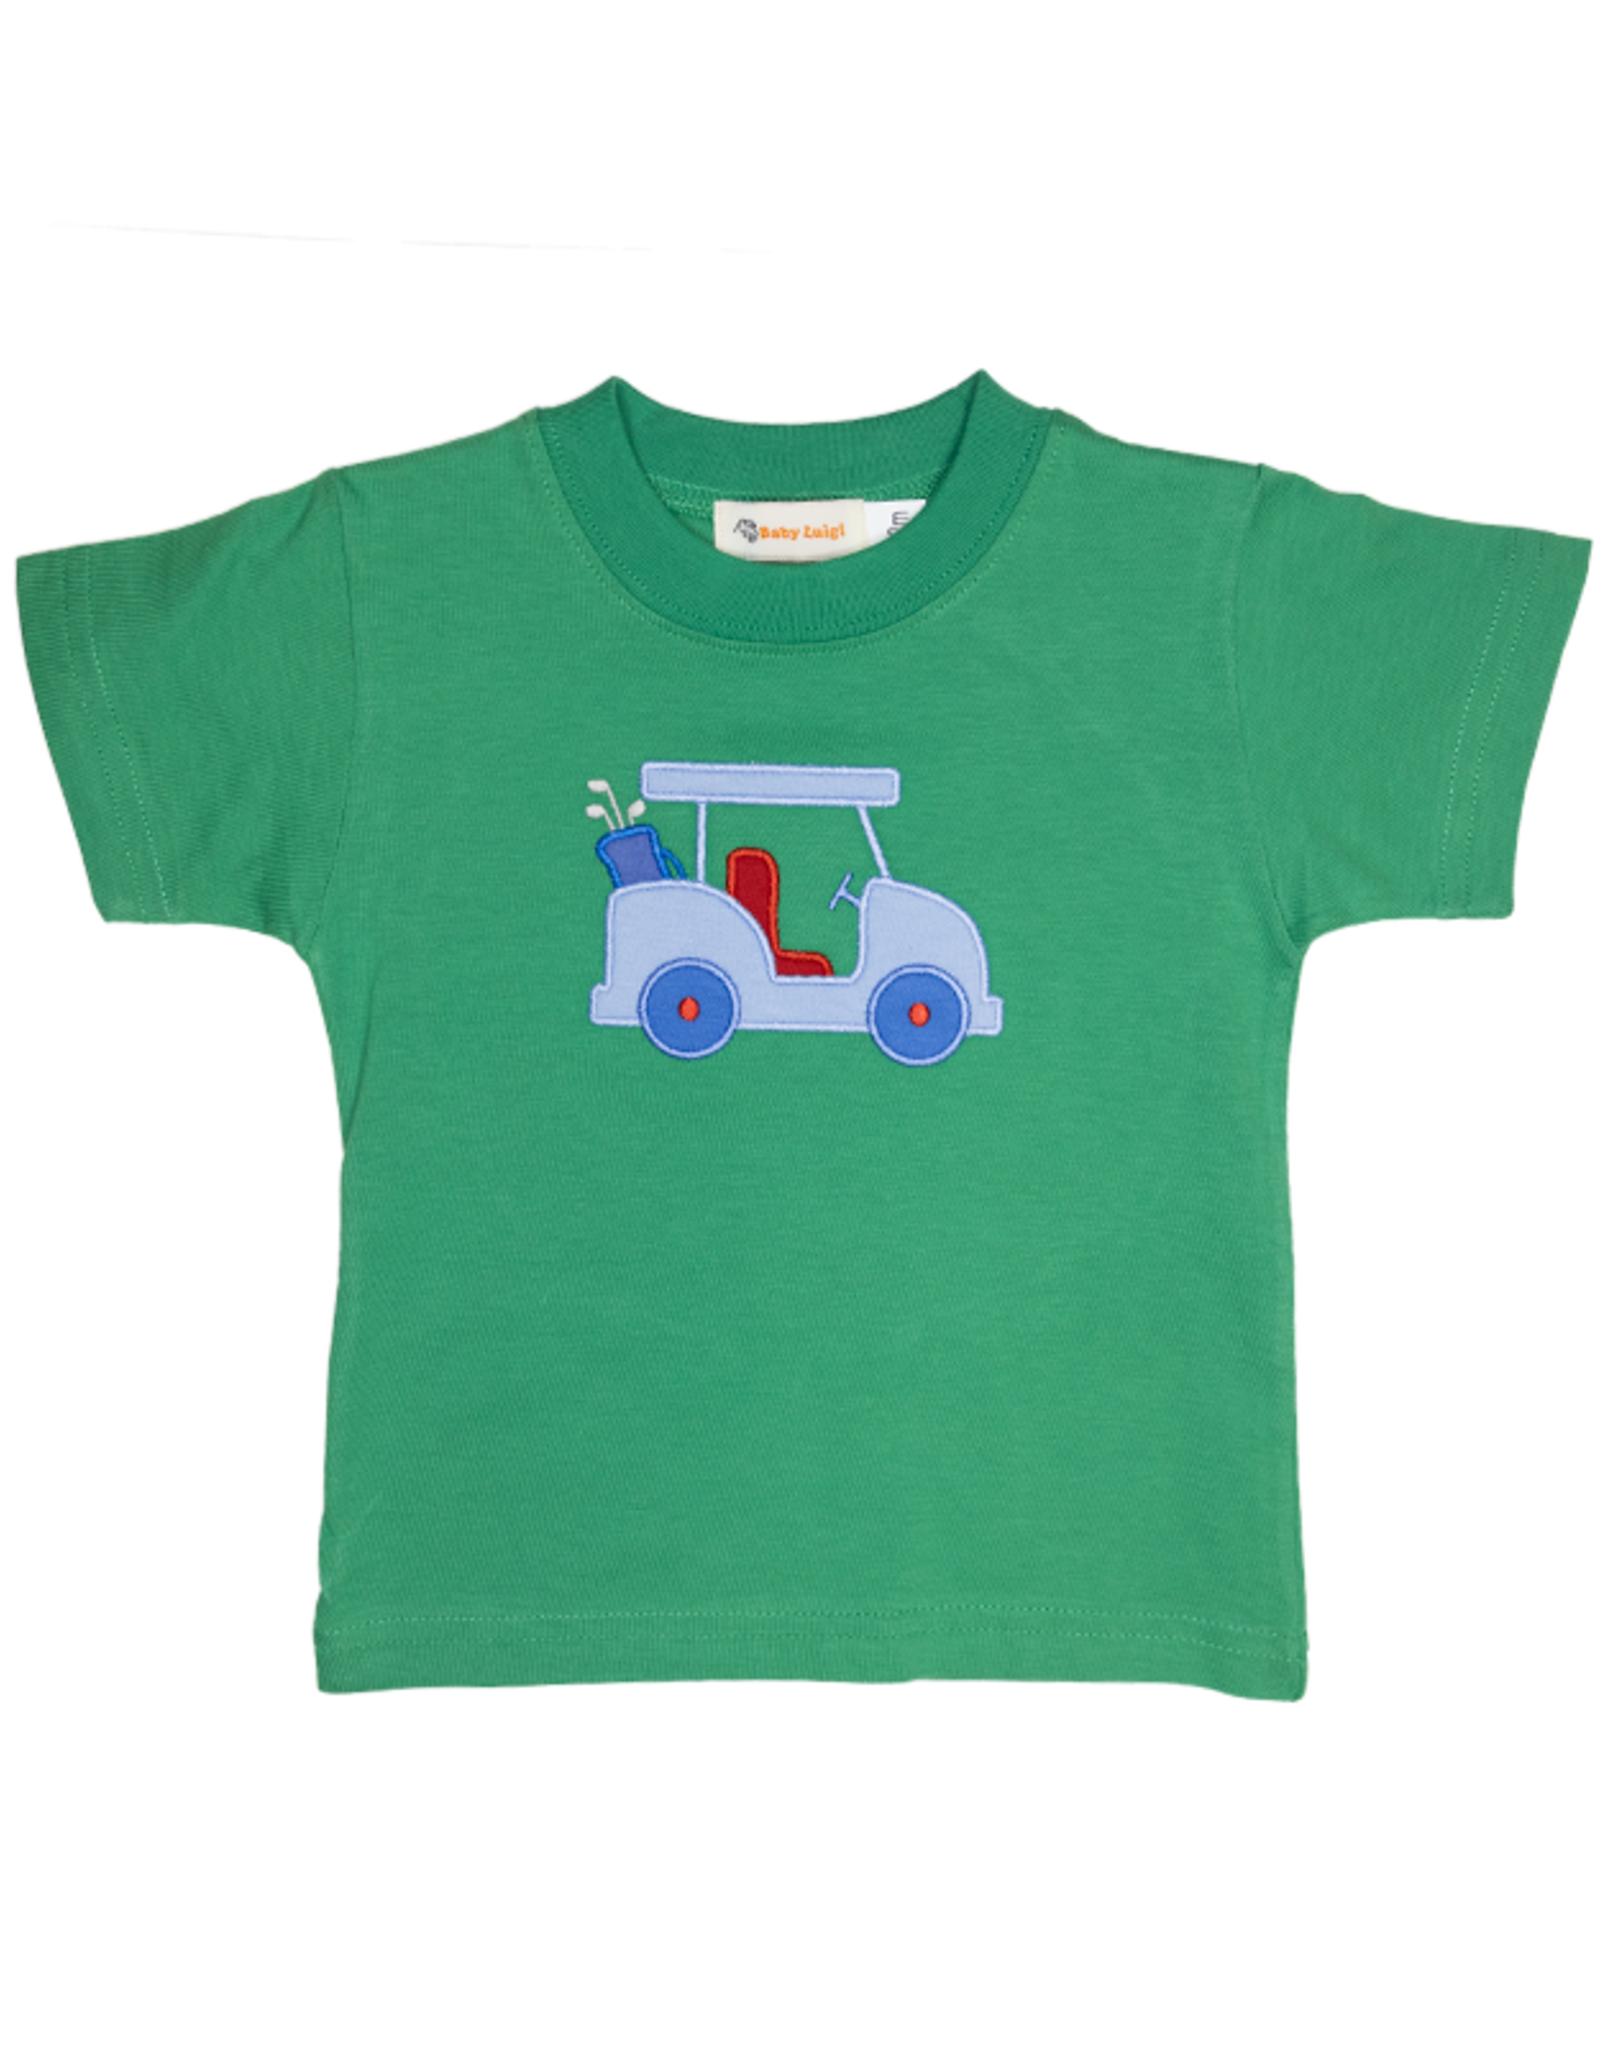 Luigi S24 Mint Green Golf Bag Shirt